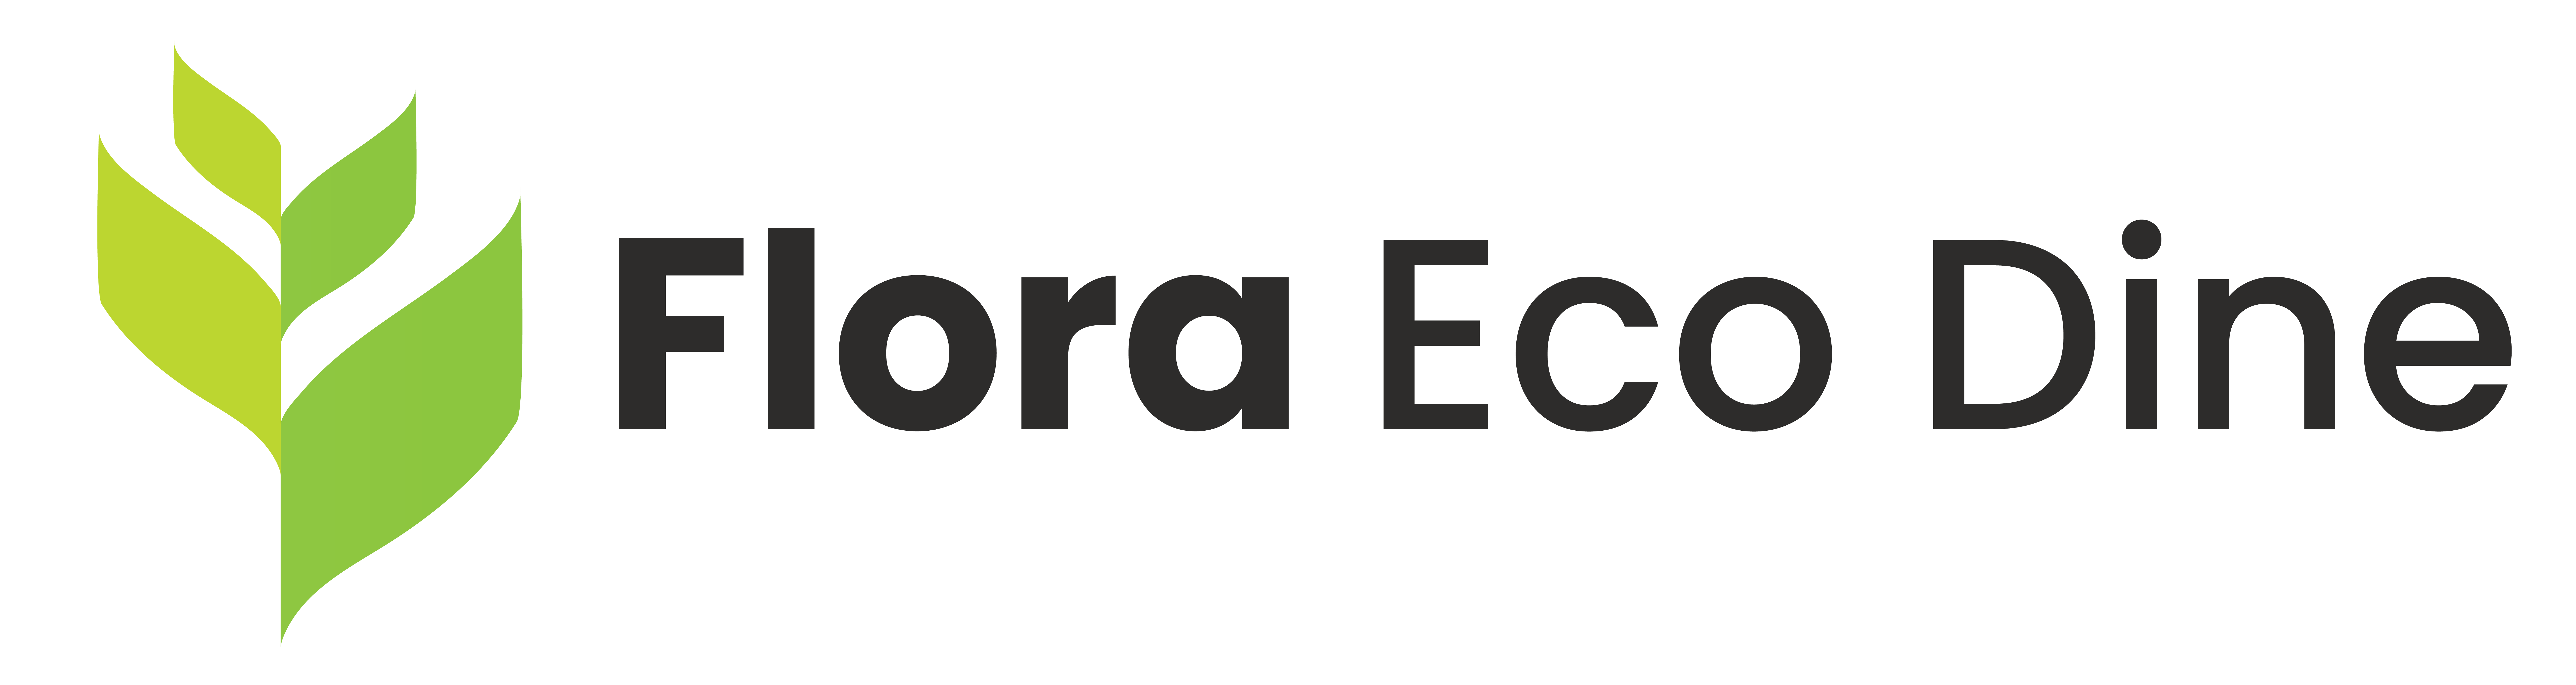 Flora Eco Dine Logo-01-02